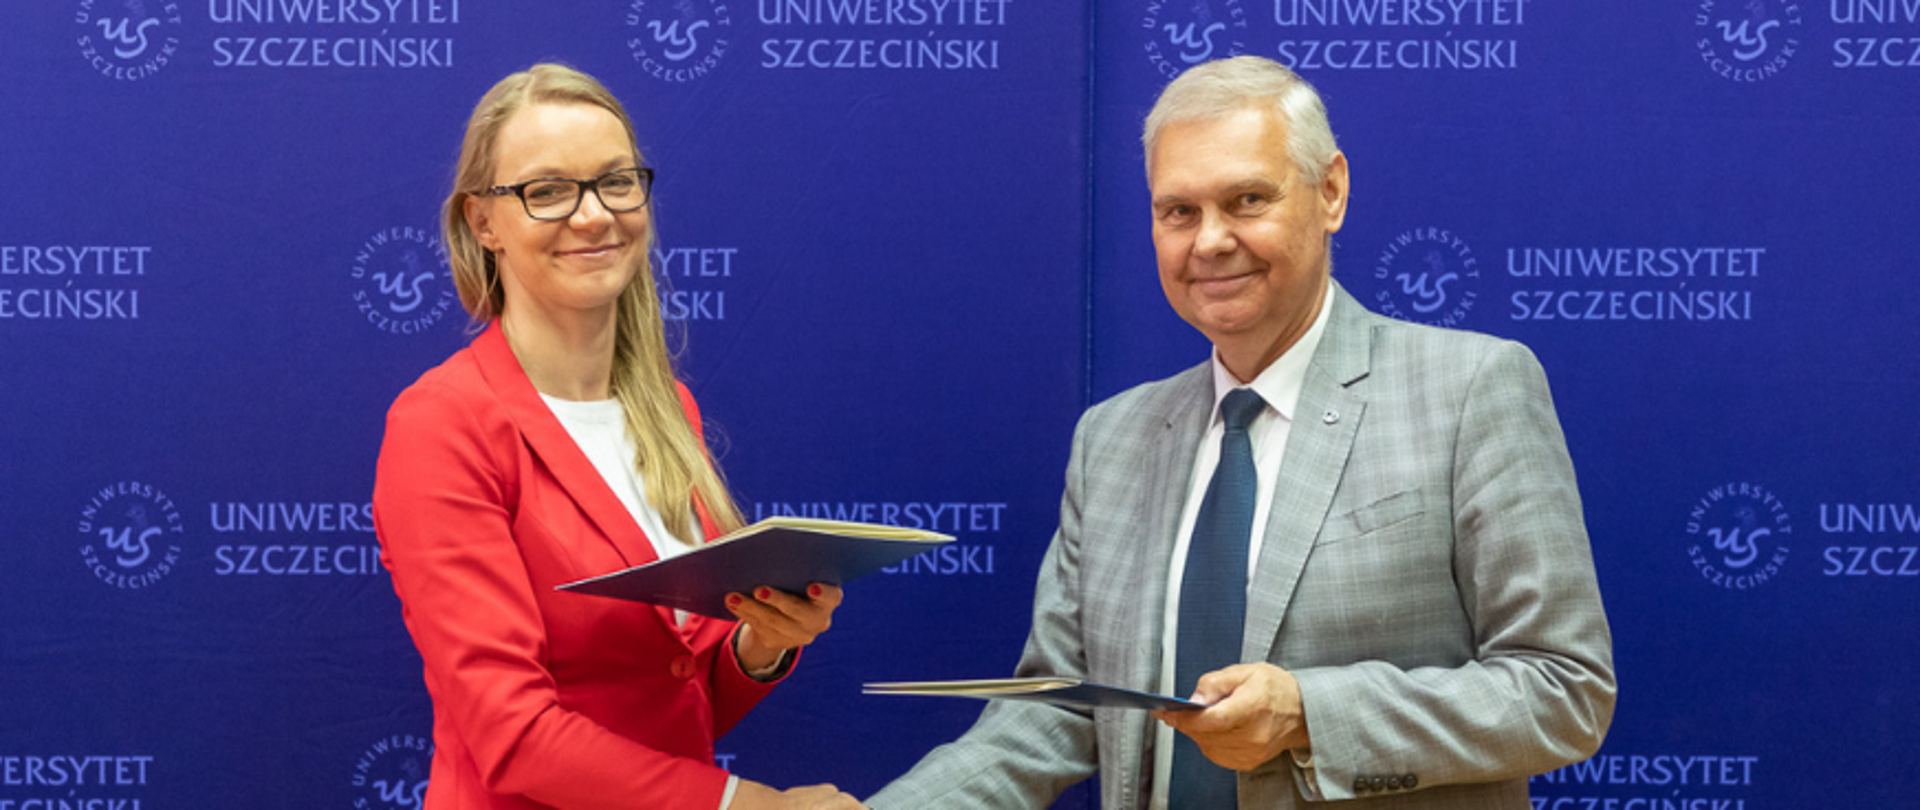 Uścisk dłoni i wymiana podpisanych dokumentów porozumienia pomiędzy Regionalnym Dyrektorem OChrony Środowiska w Szczecinie oraz Rektorem Uniwersytetu Szczecińskiego